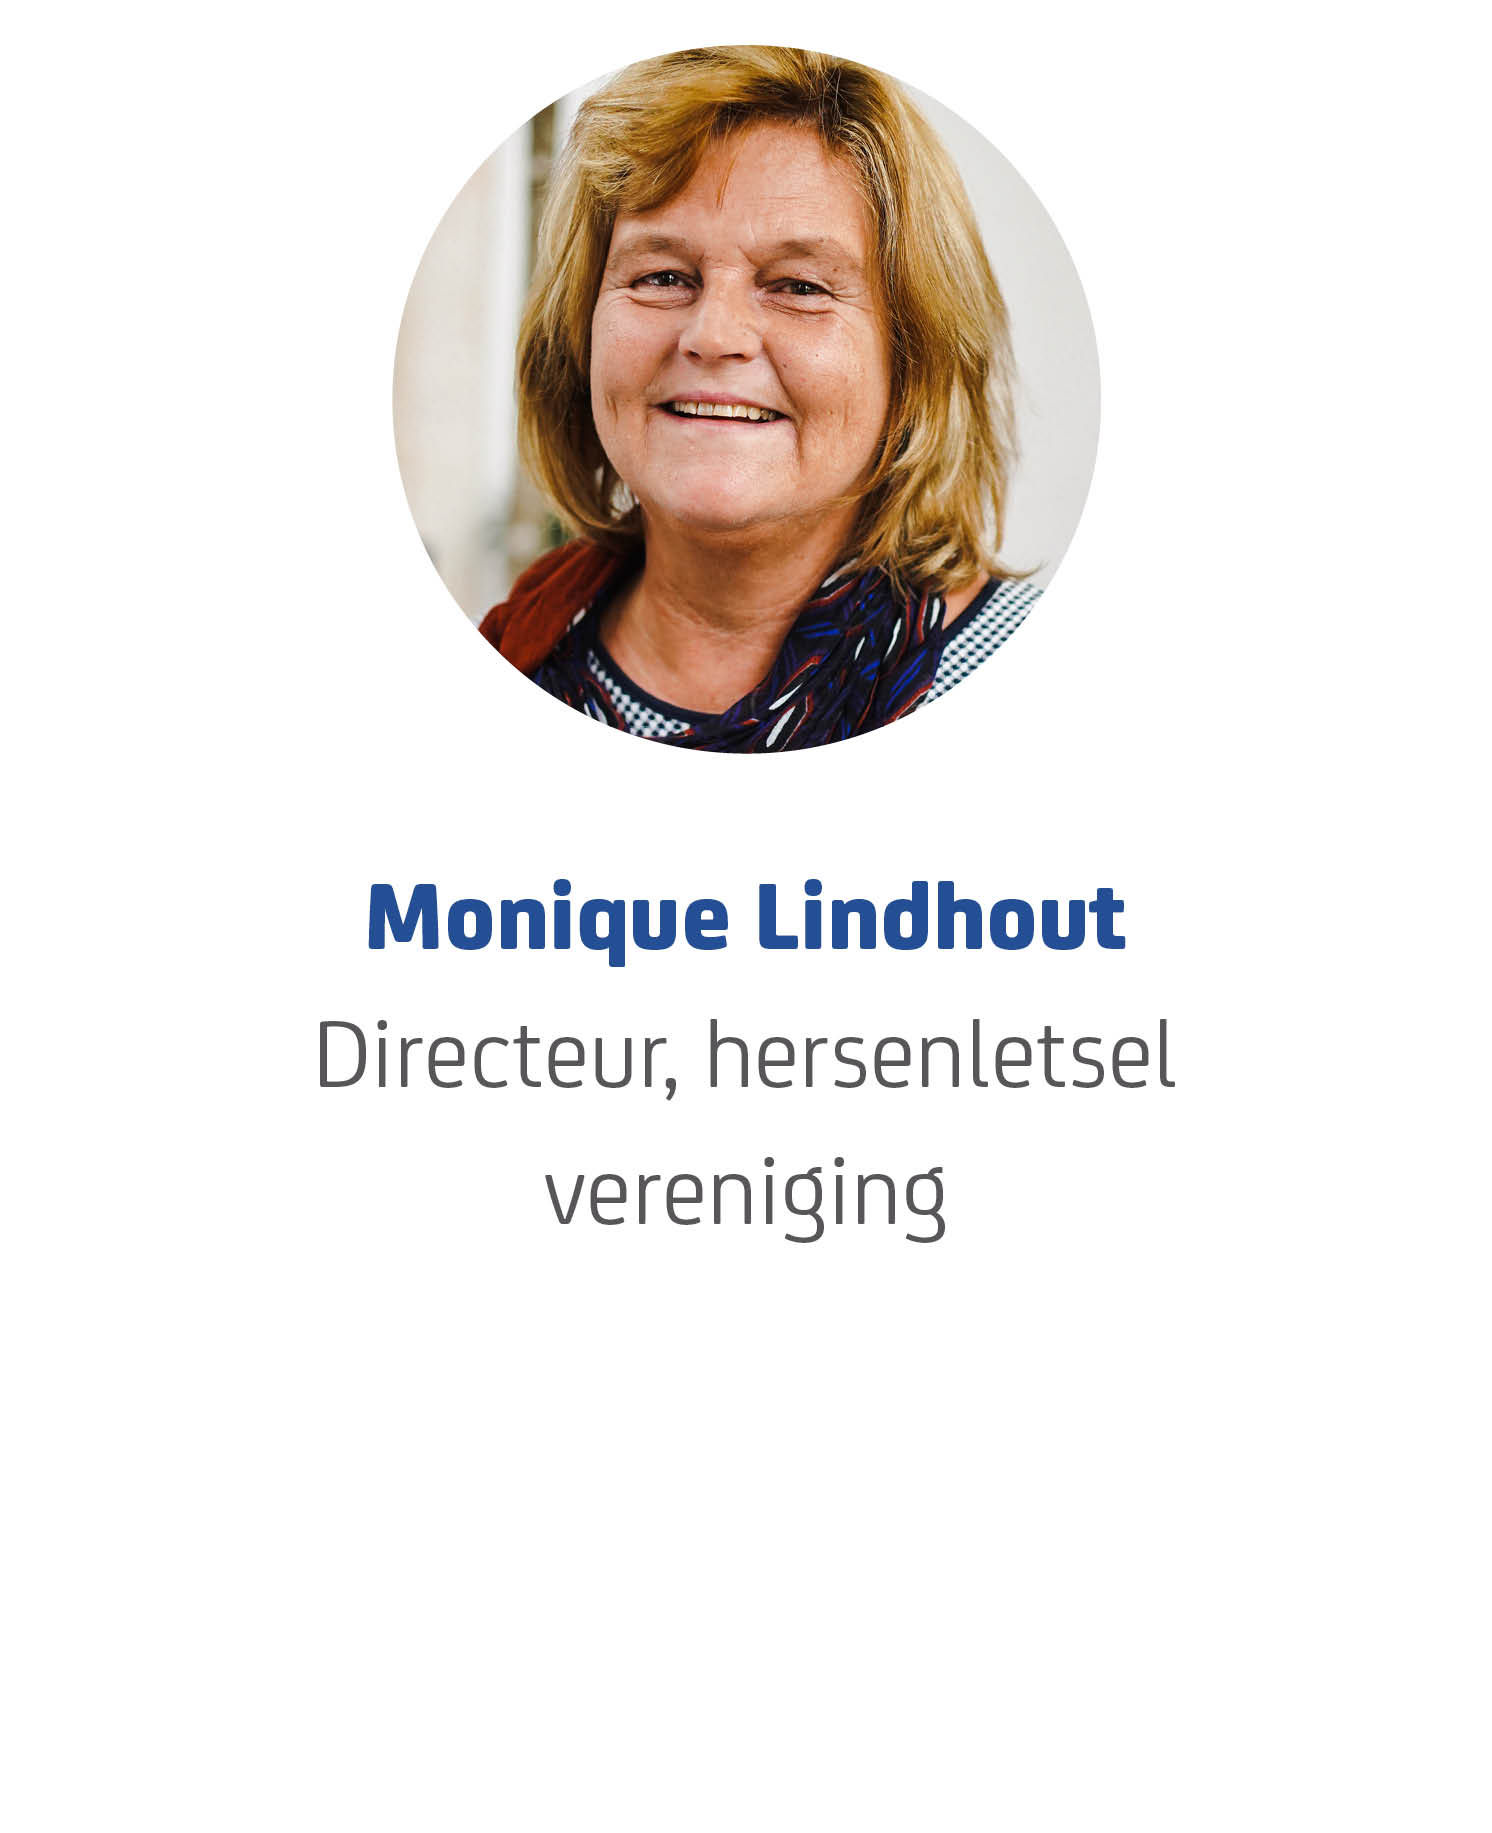 Monique Lindhout